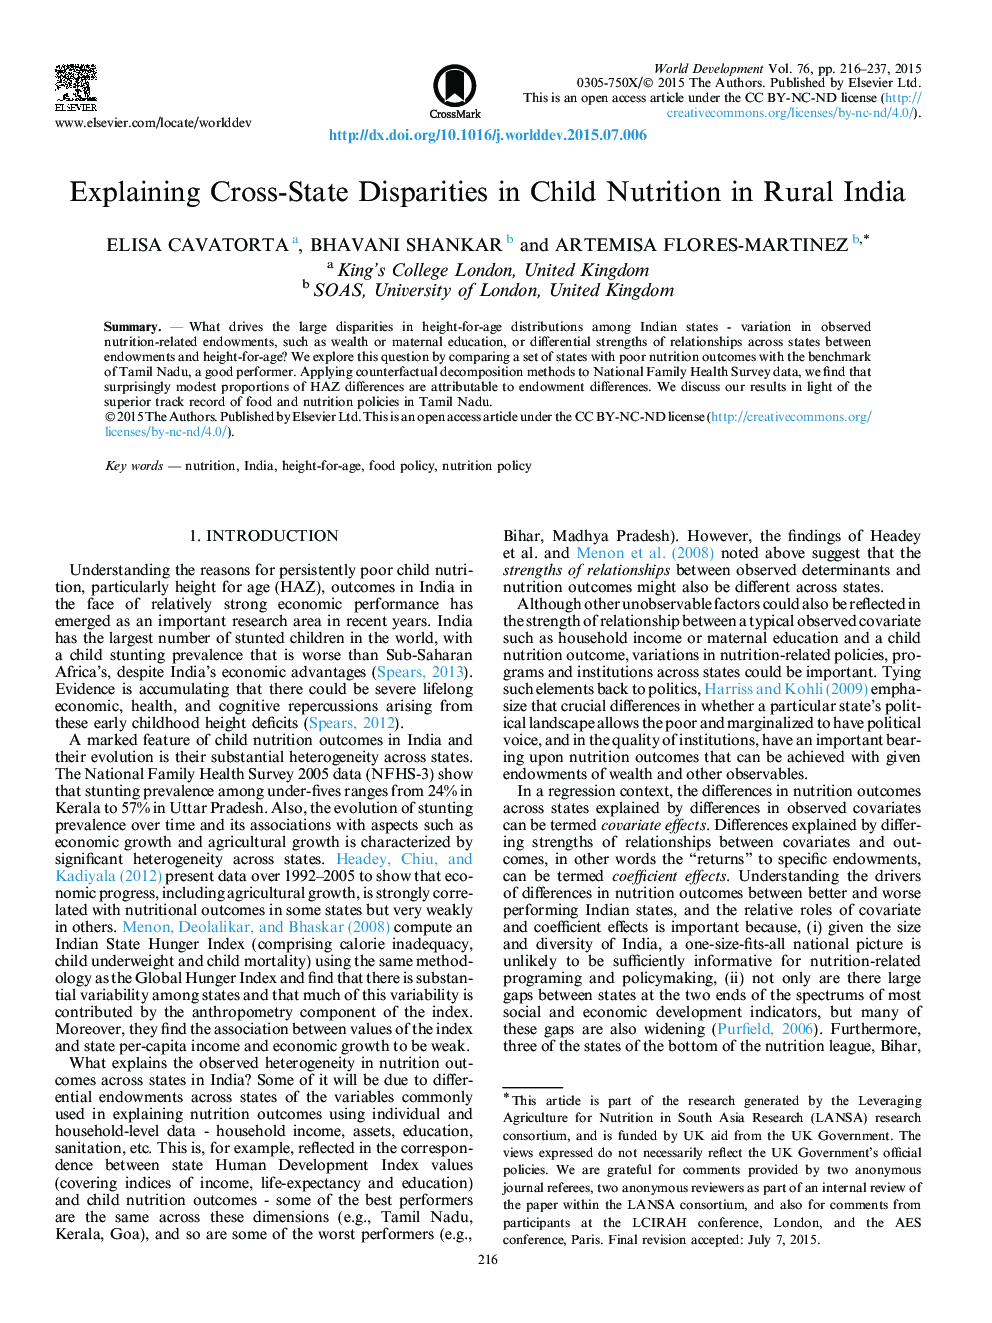 توضیح تفاوت های بین دولت های مختلف در تغذیه کودکان در هند روستایی 